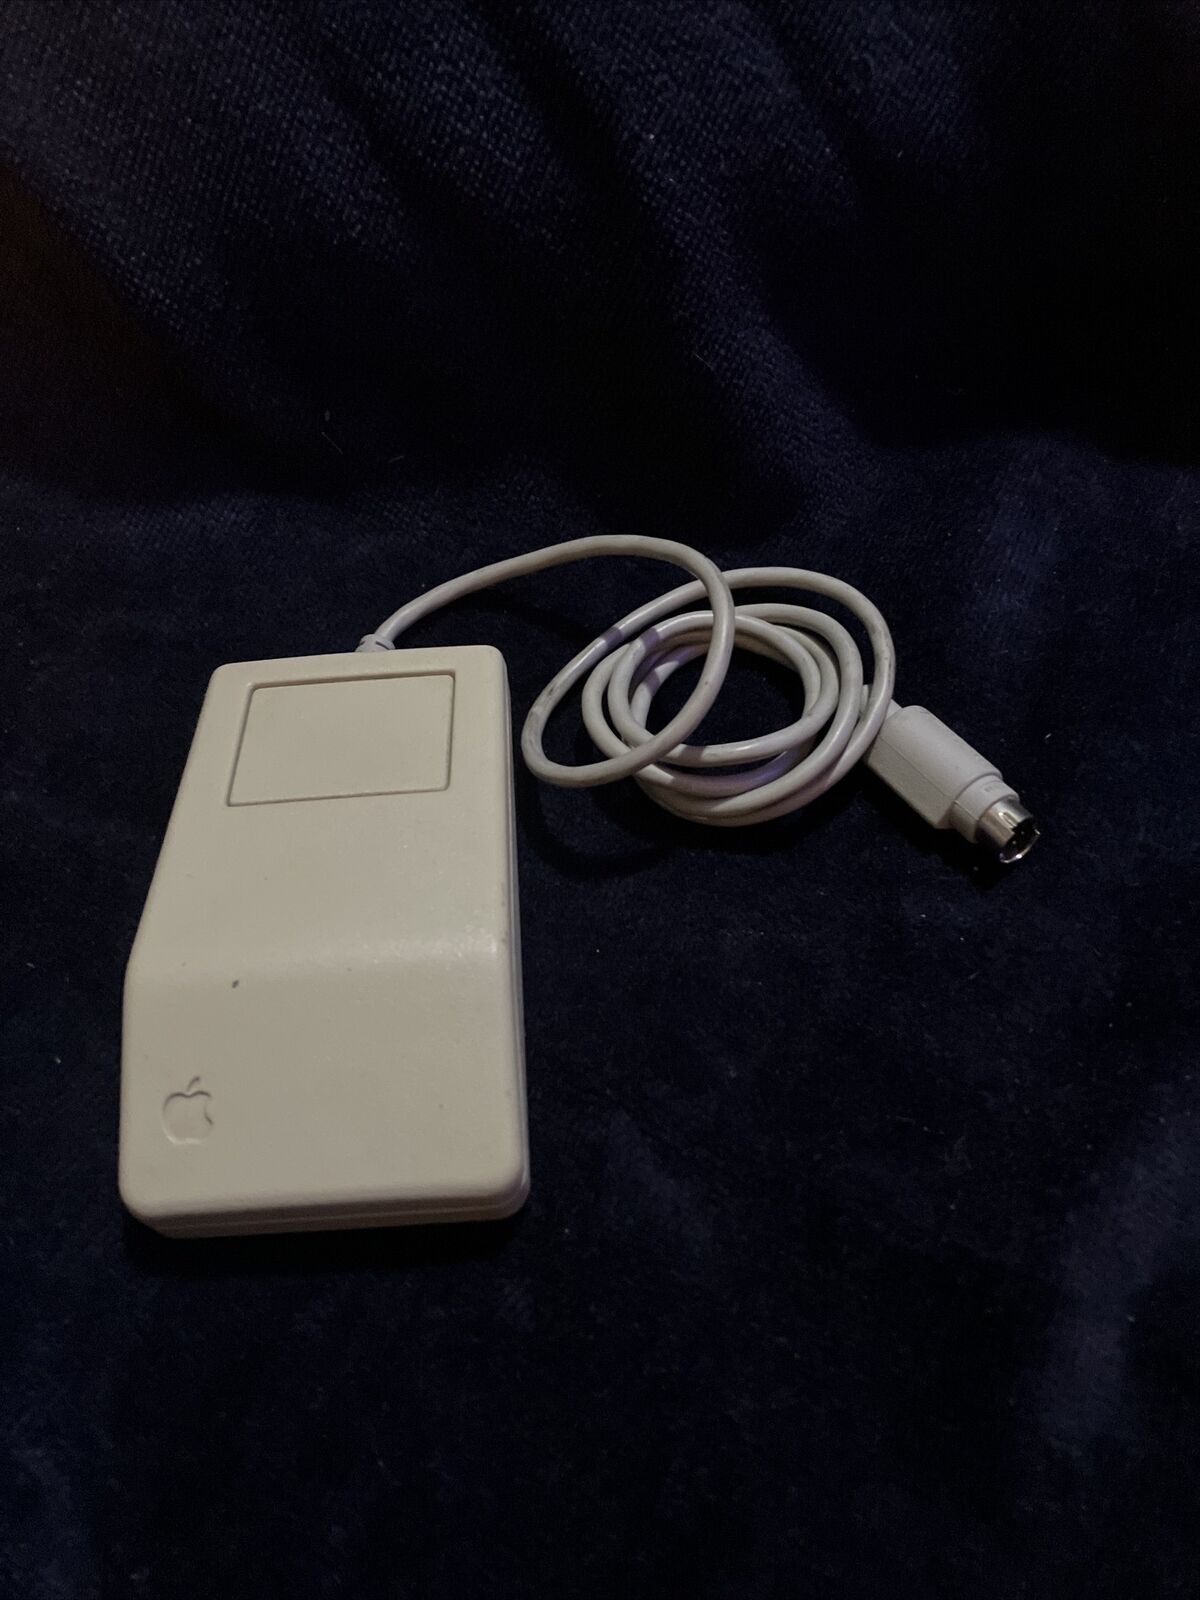 Apple Desktop Bus Mouse G5431 VINTAGE